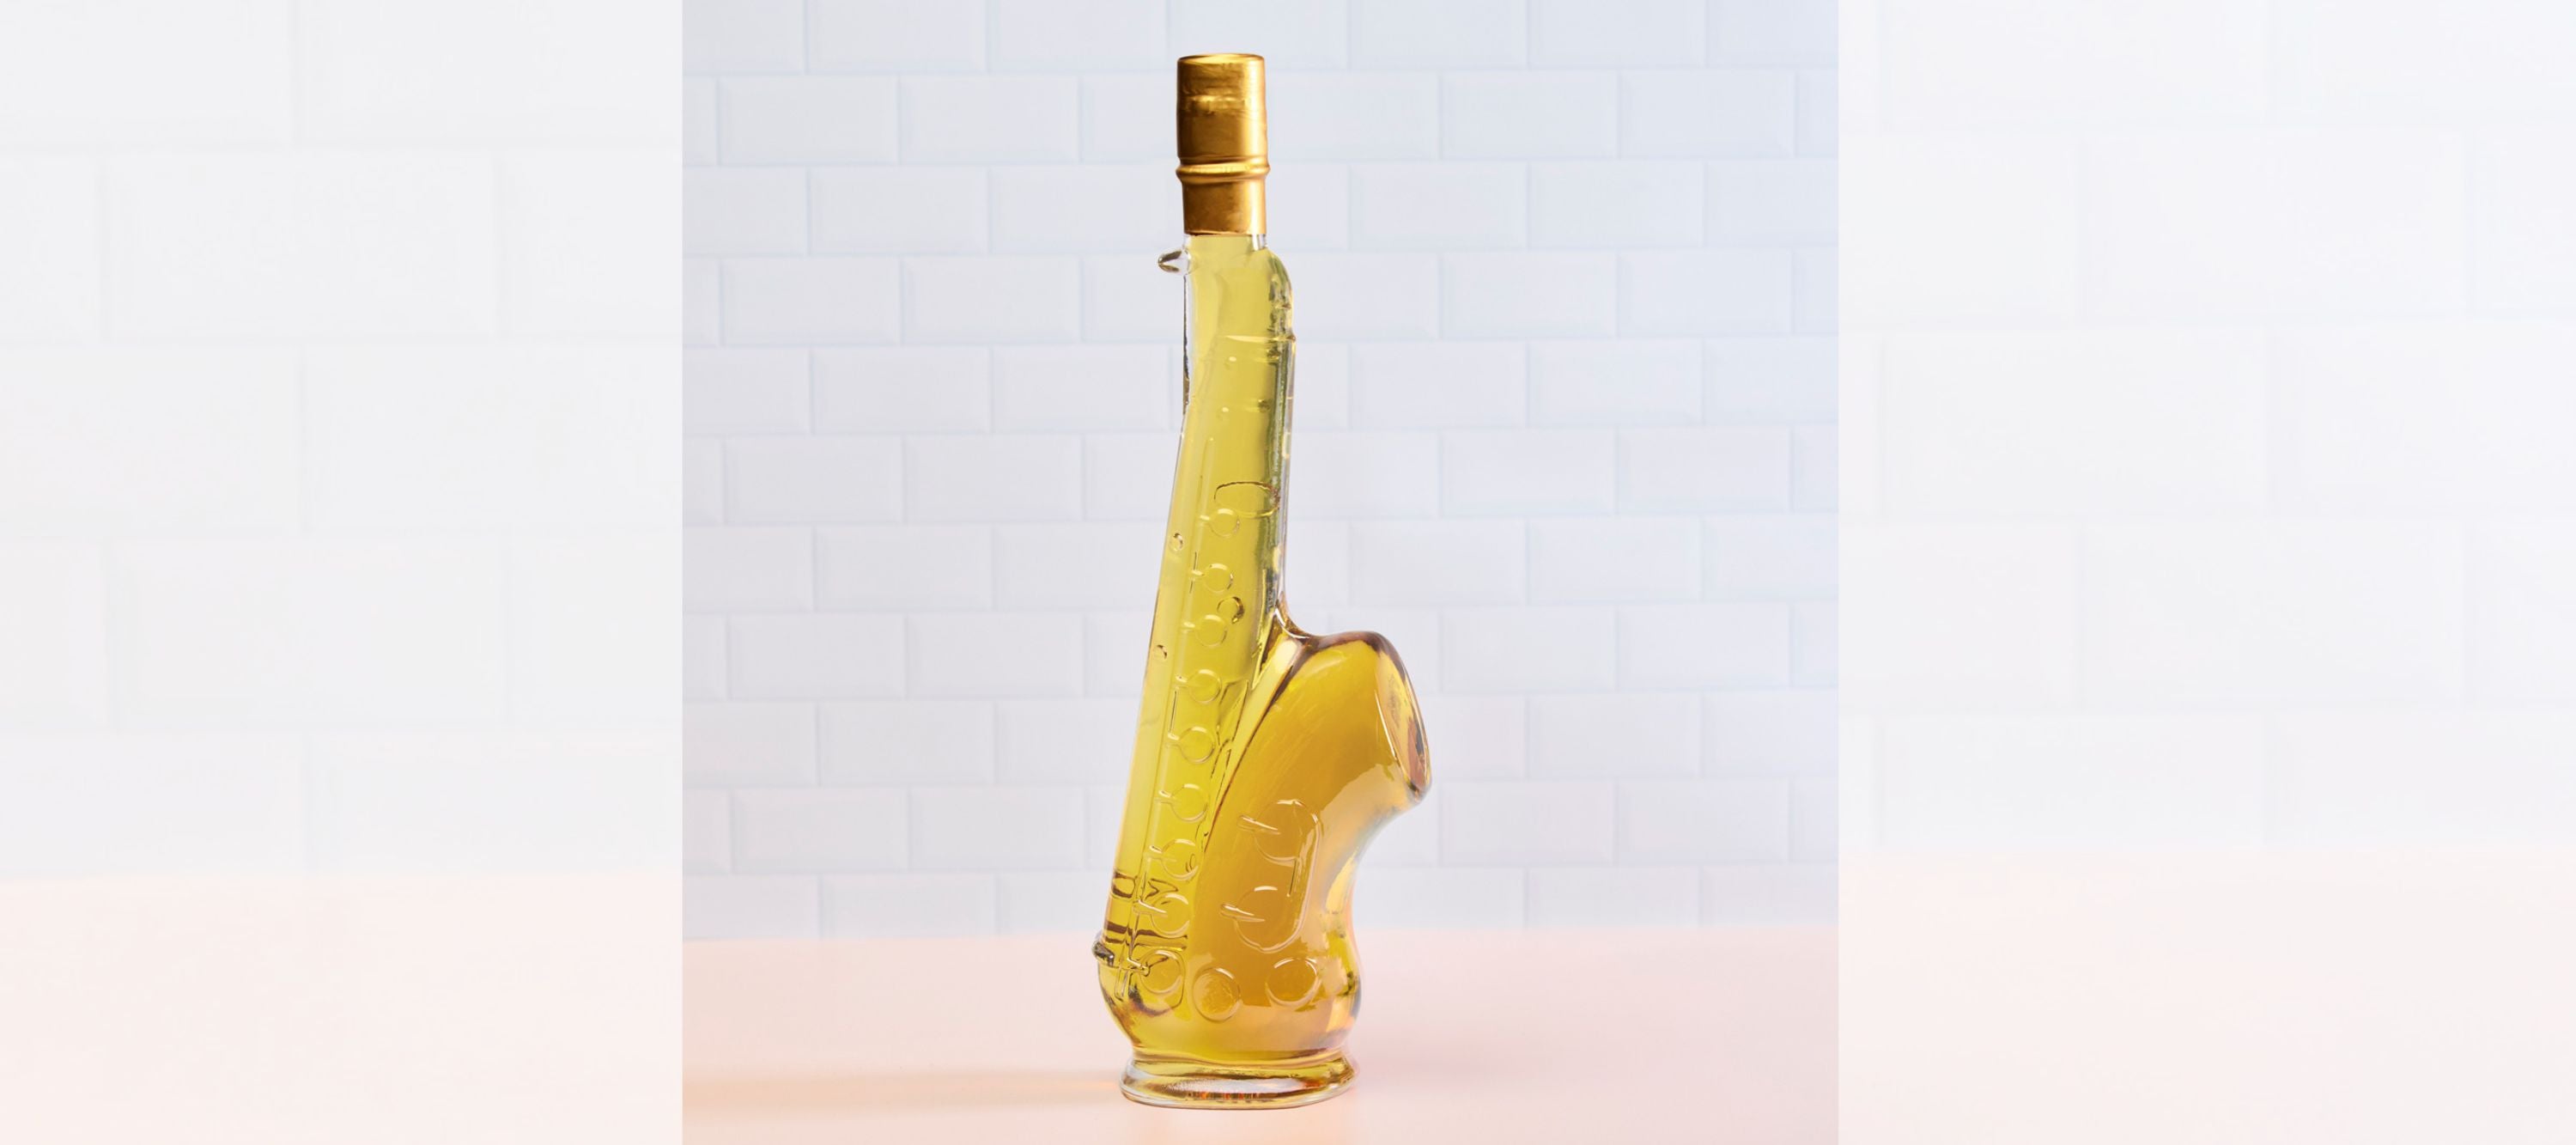  Saxophone Bottle filled with Butterscotch Liqueur